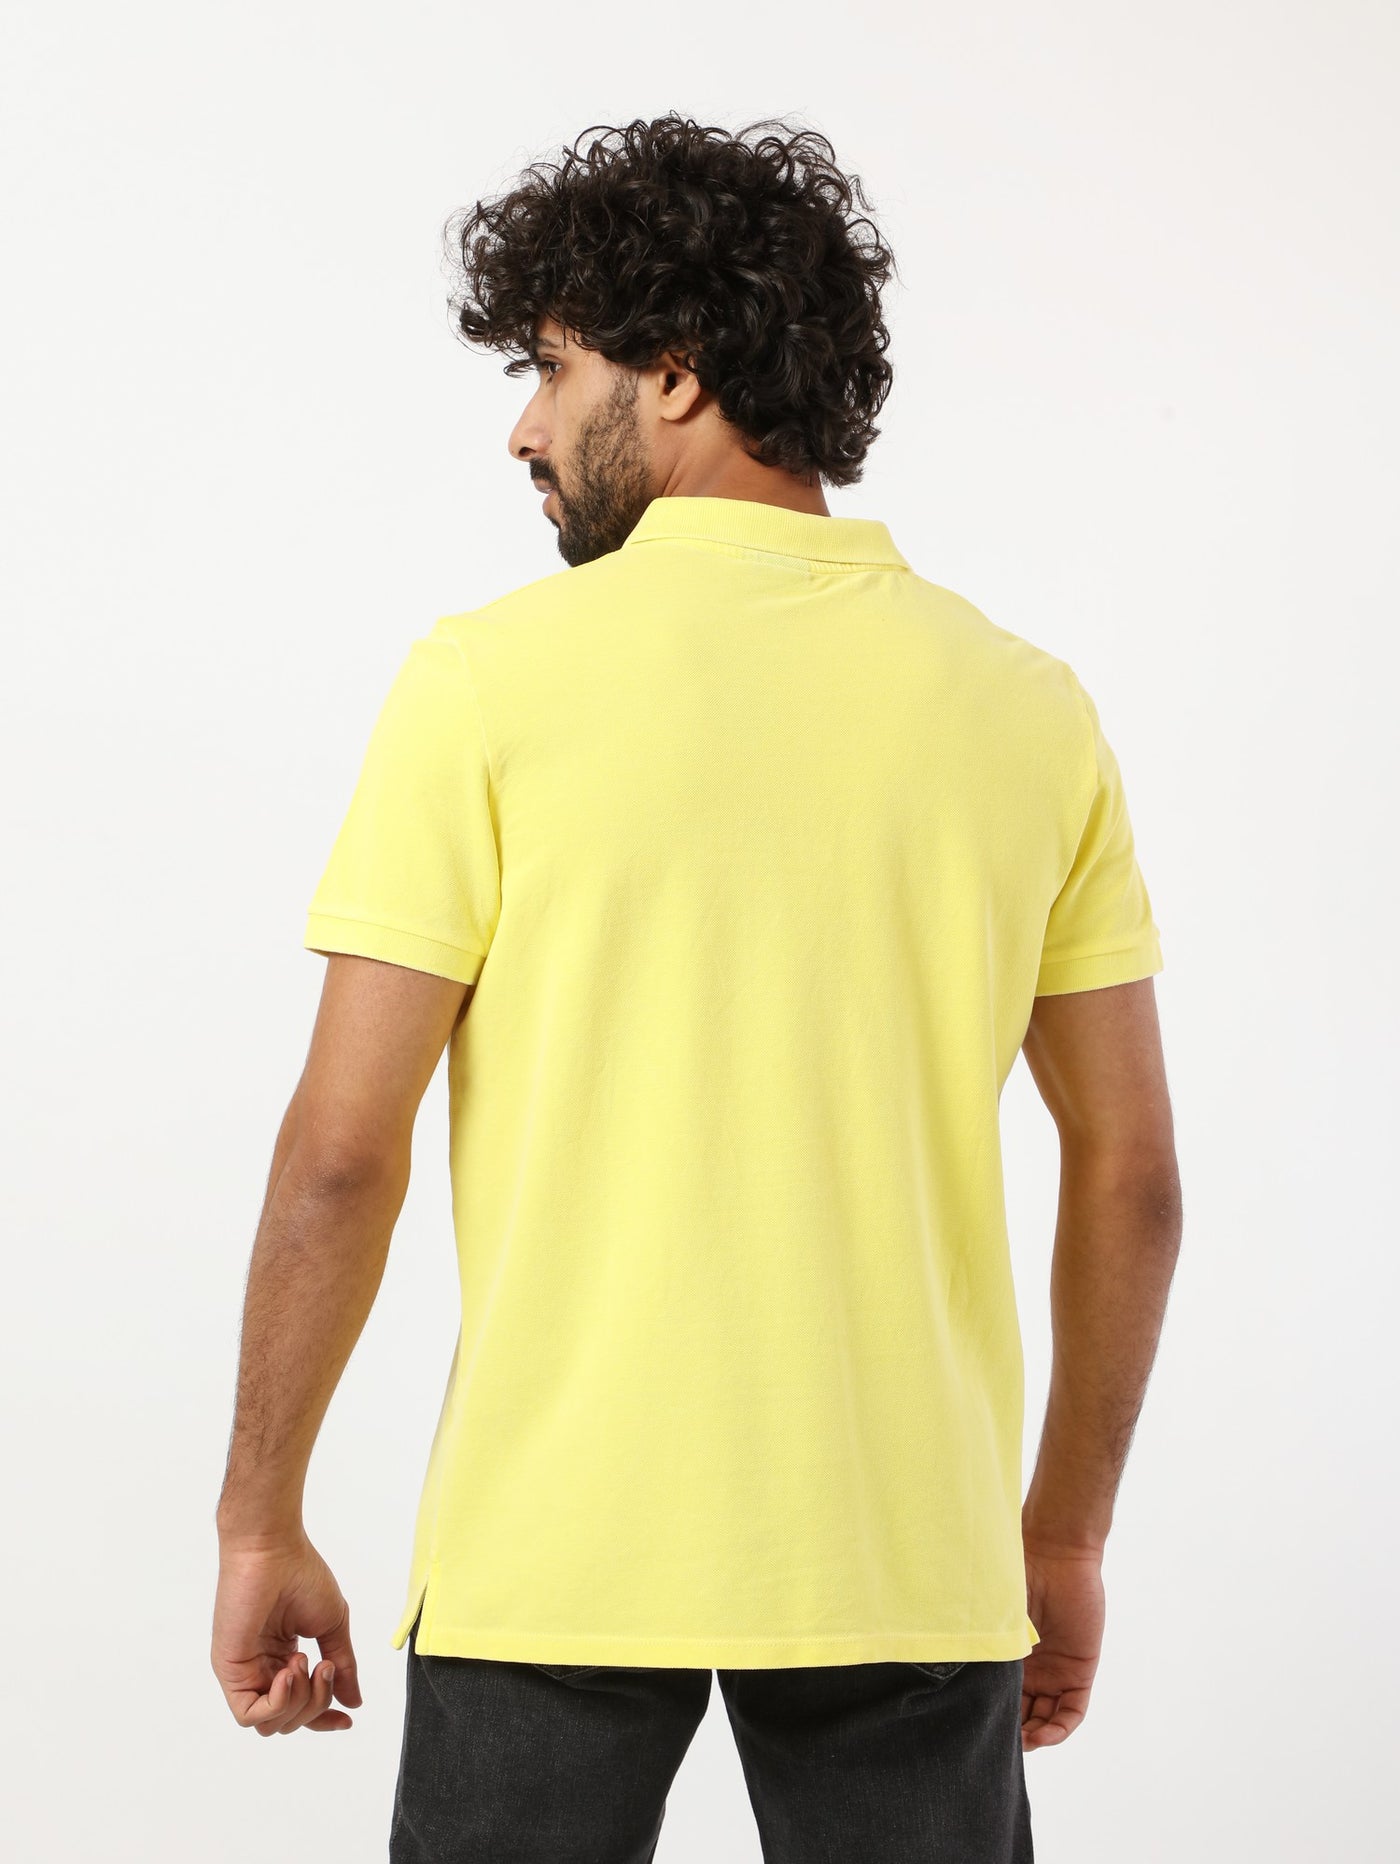 Polo Shirt - Plain